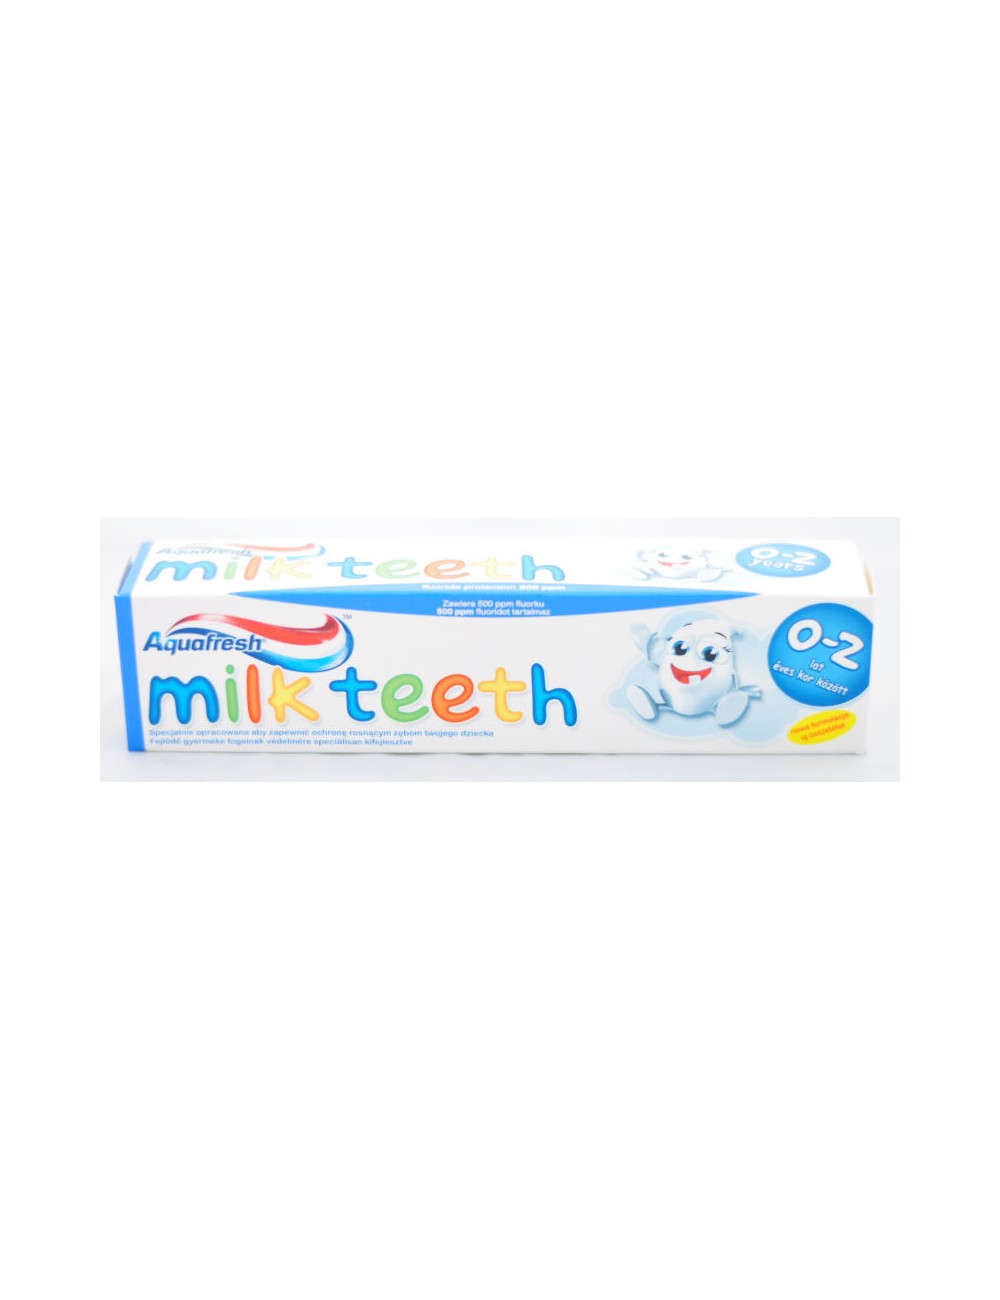 Aquafresh Milk Teeth 50ml – pieniąca się pasta do zębów dla dzieci w wieku 0-2 lat